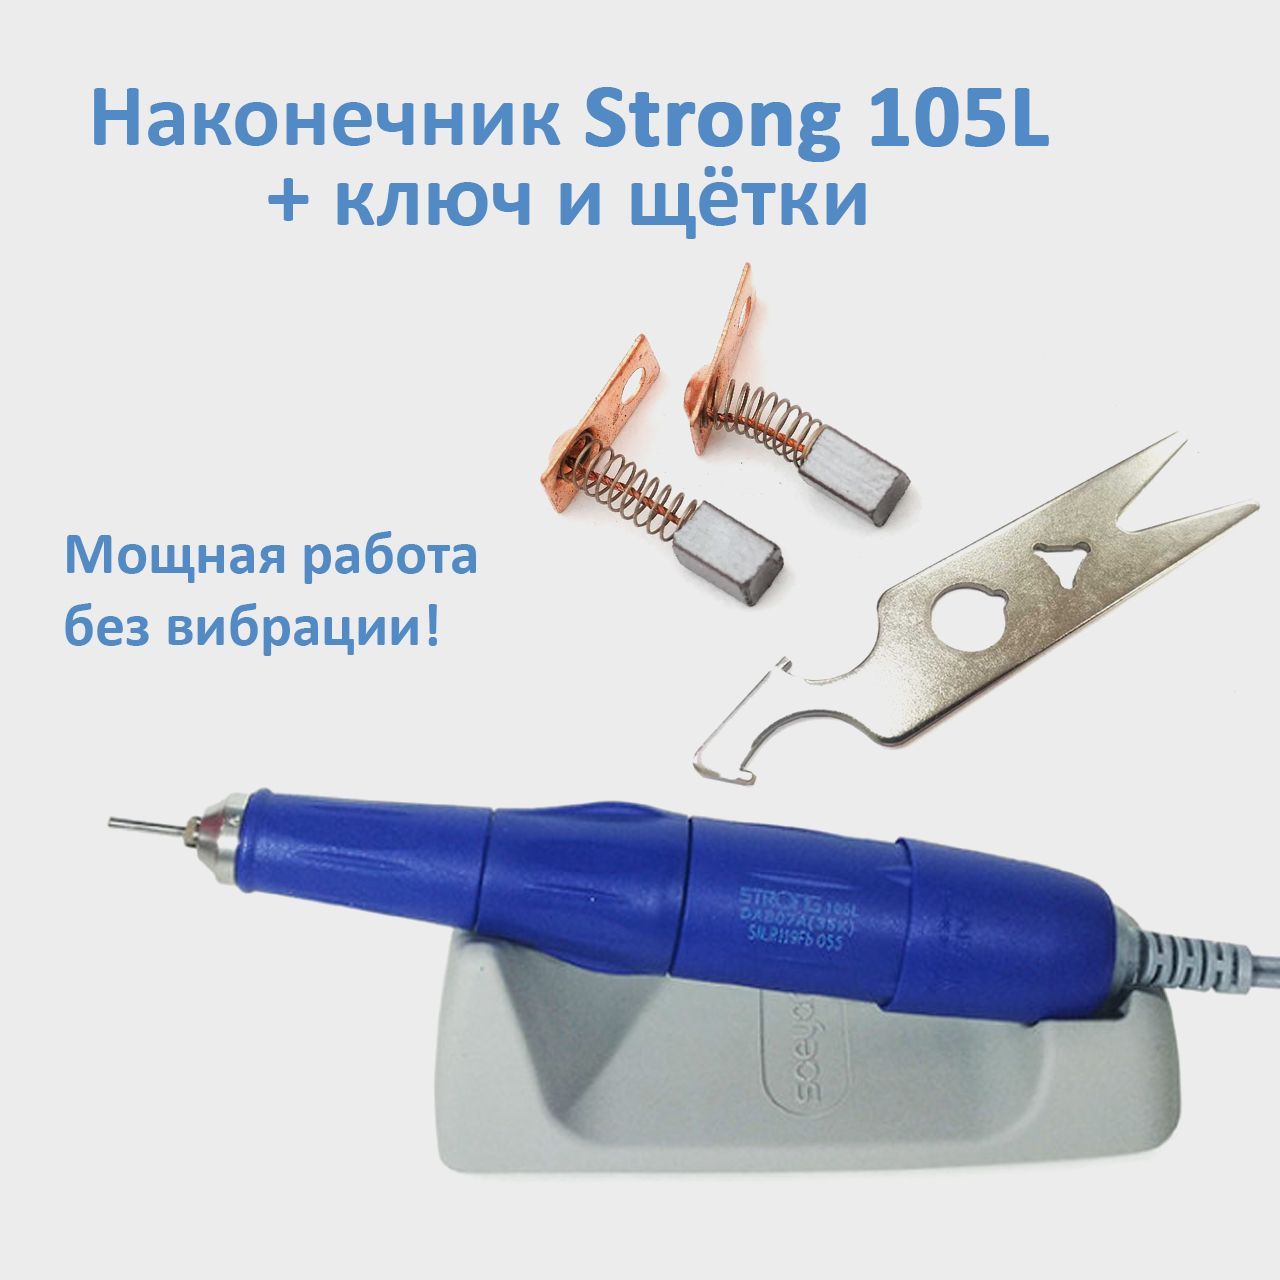 Ручка для маникюра Strong 105L 35000 оборотов, сменные щетки и ключ для наконечника С сменные щетки для ручки наконечника strong 2 шт